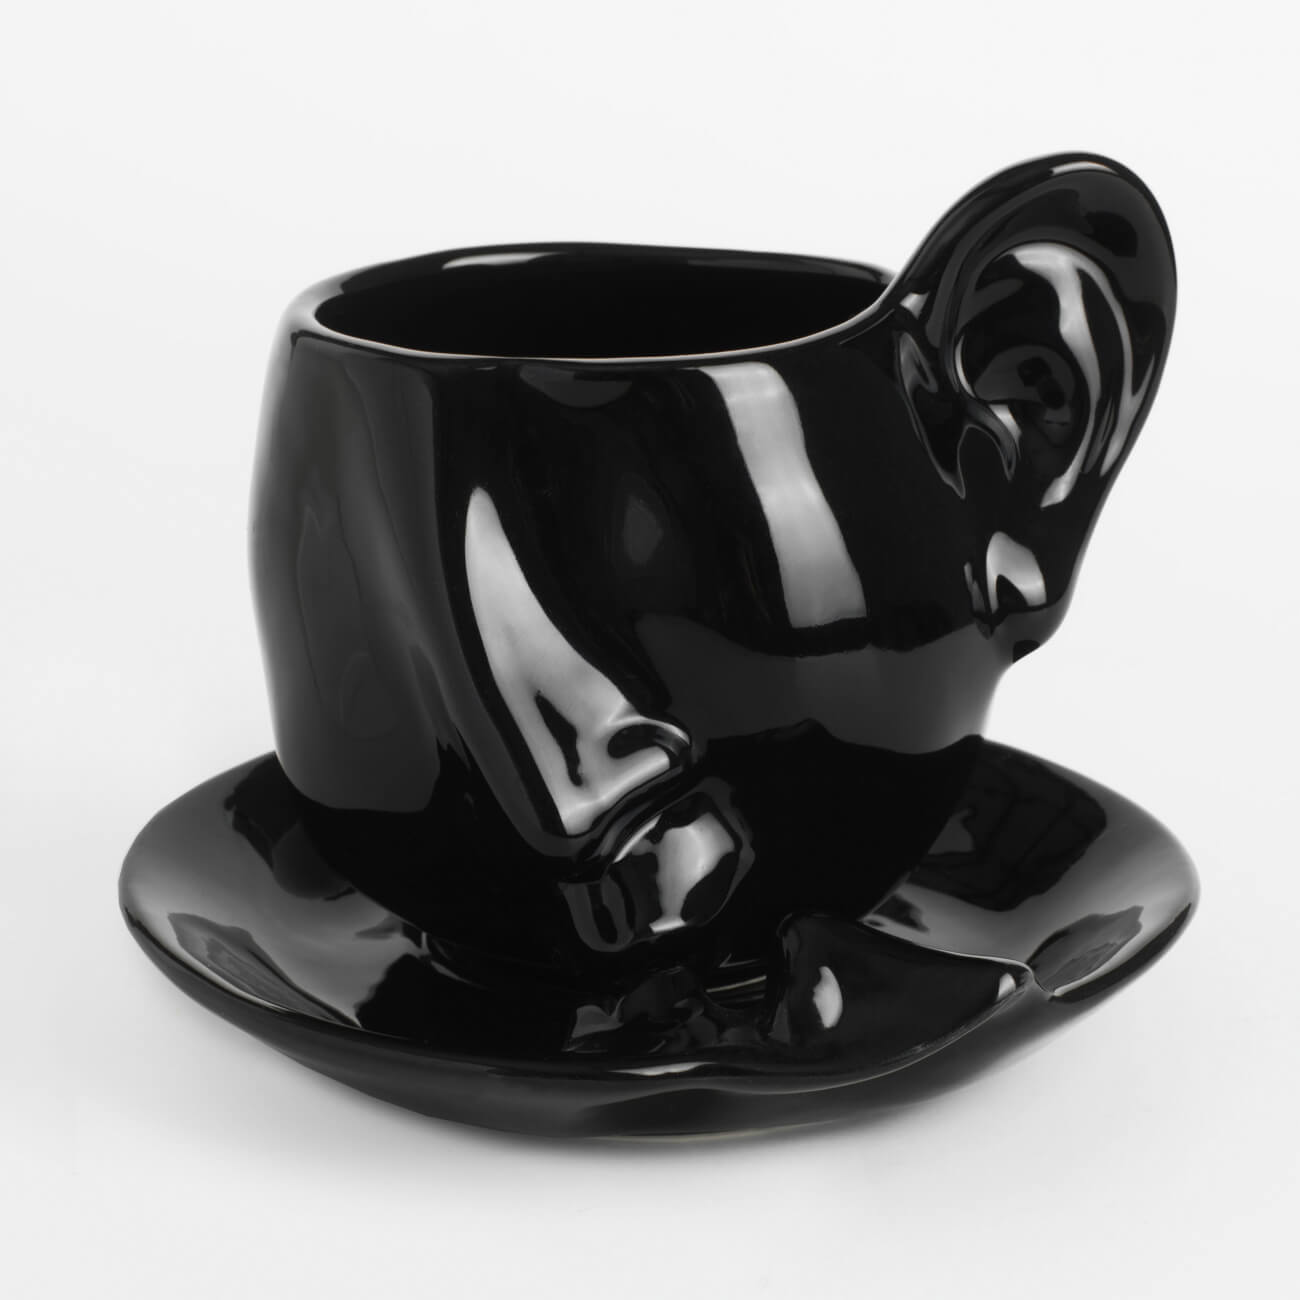 Пара чайная, 1 перс, 2 пр, 320 мл, керамика, черная, Поцелуй, Baise пара чайная gipfel blanche чашка и блюдце